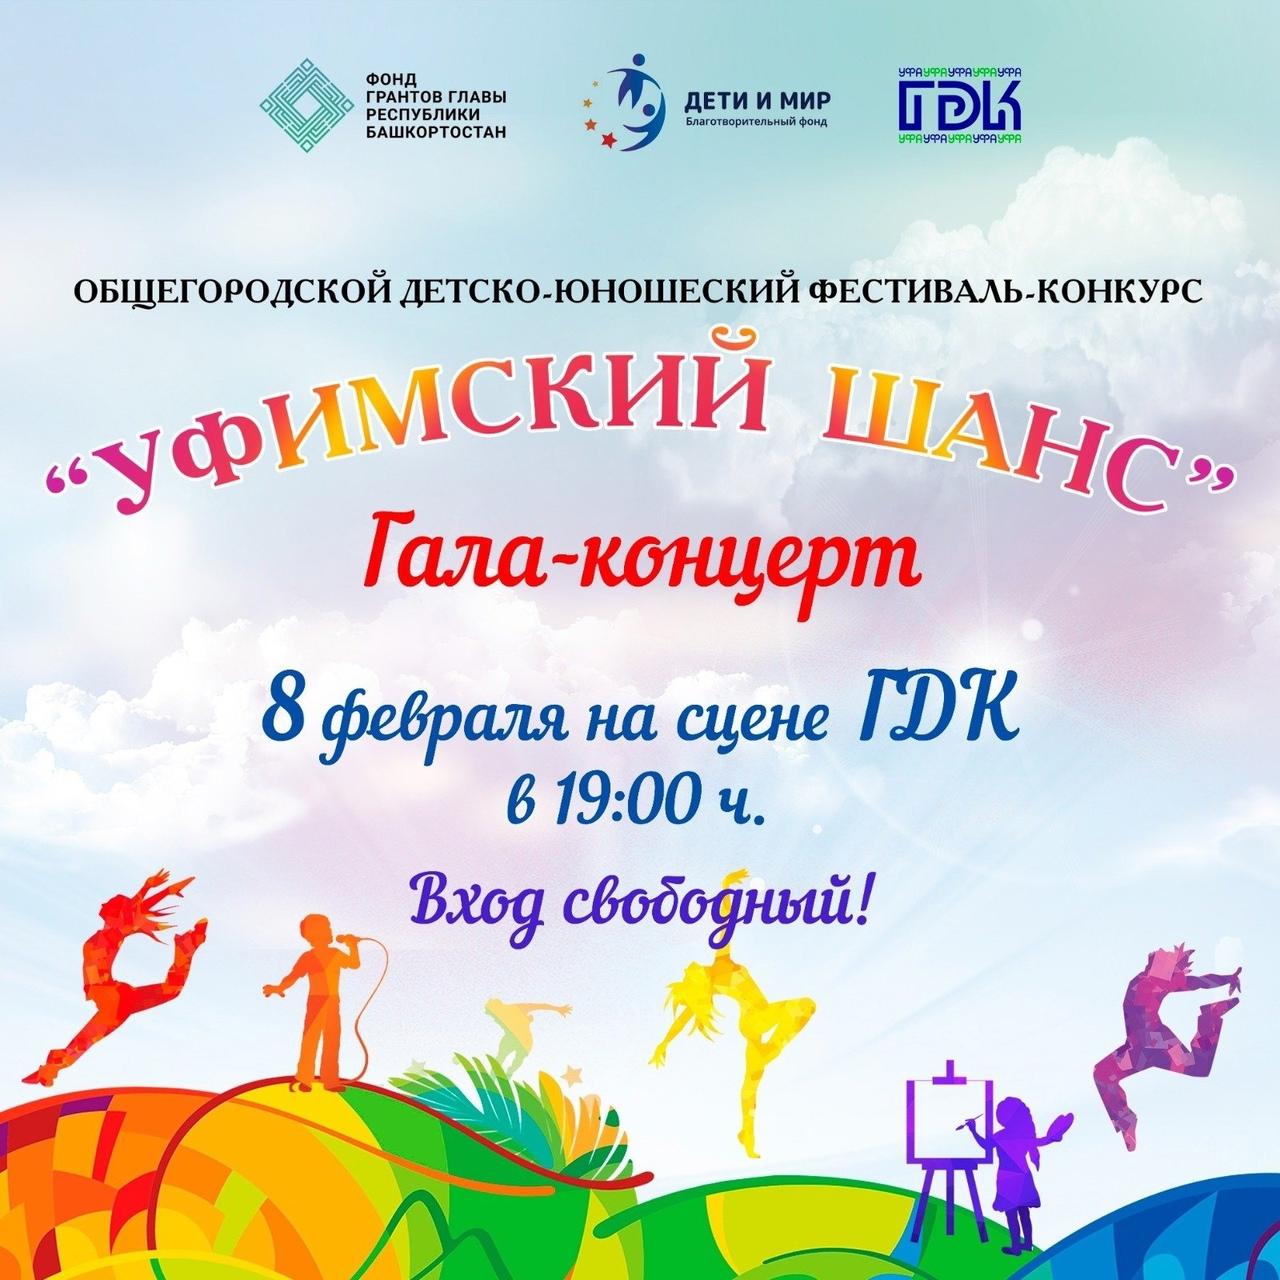 Состоится гала-концерт Общегородского детско-юношеского фестиваля-конкурса «Уфимский шанс»